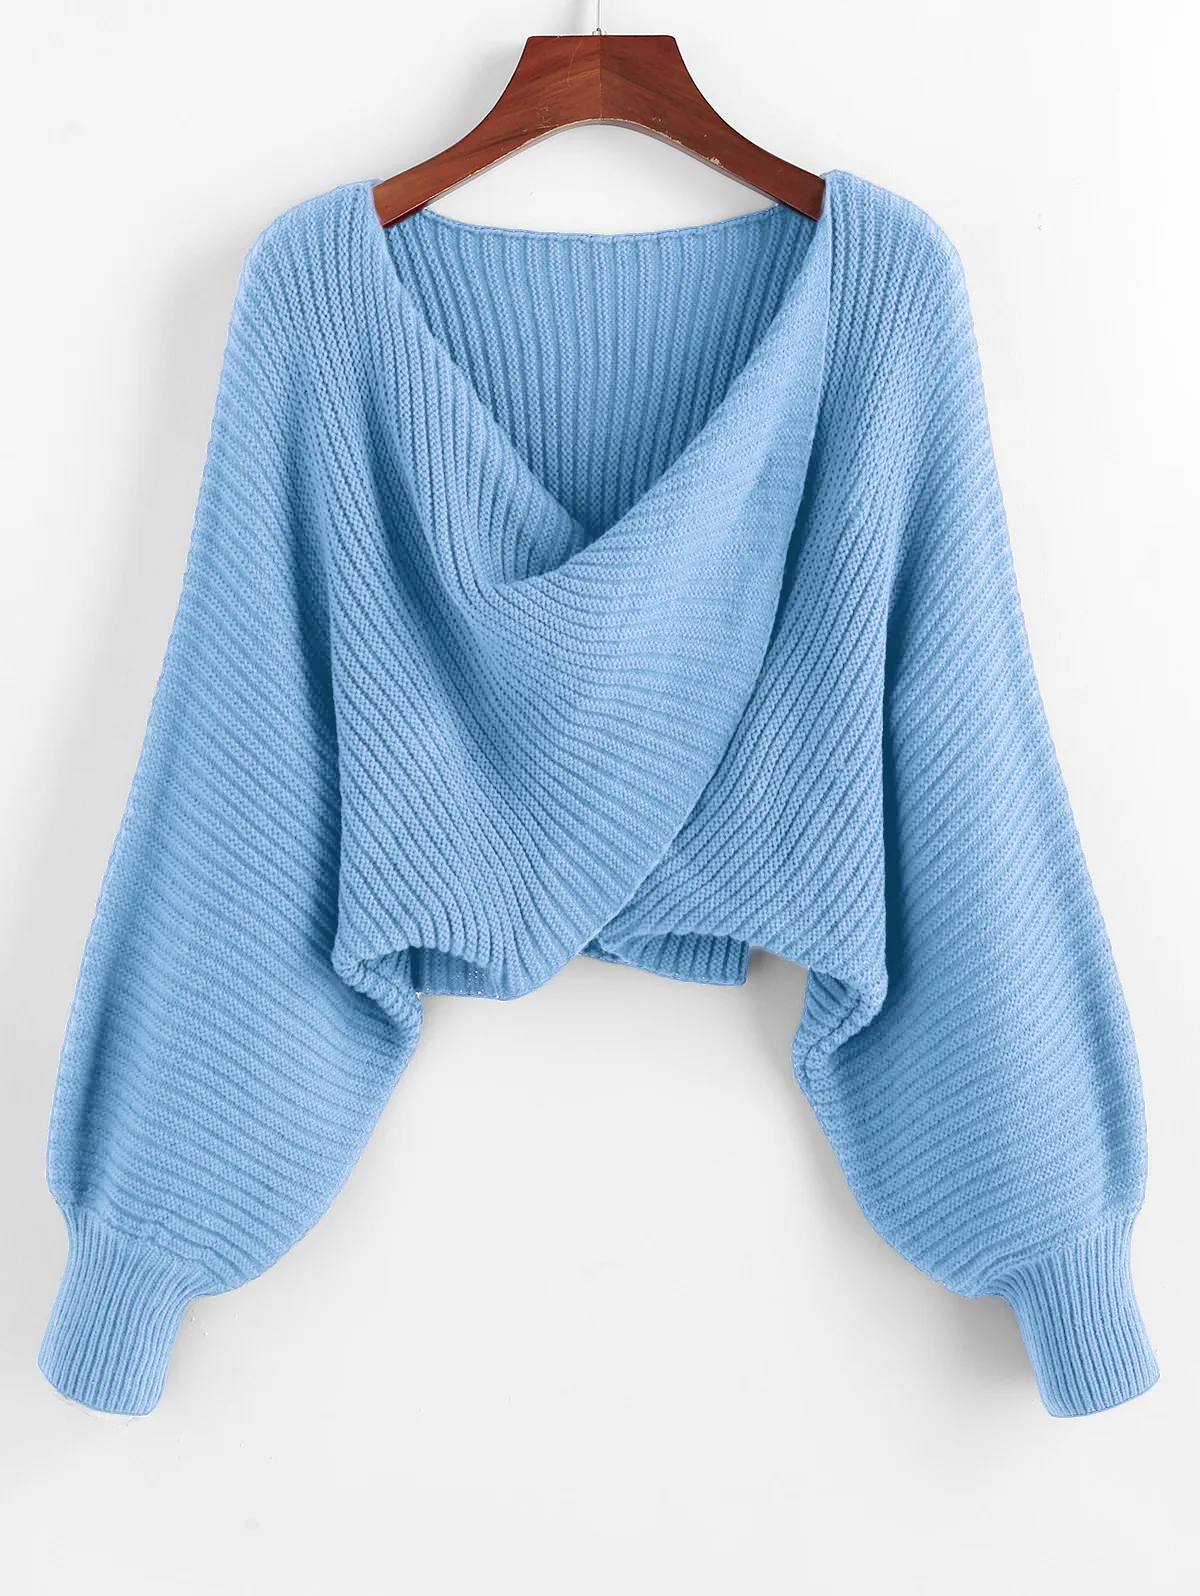 ZAFUL, крученый Асимметричный короткий свитер, Женский Теплый Однотонный пуловер, рукав летучая мышь, сексуальный свитер,, Осень-зима, повседневный женский свитер - Цвет: Light Sky Blue